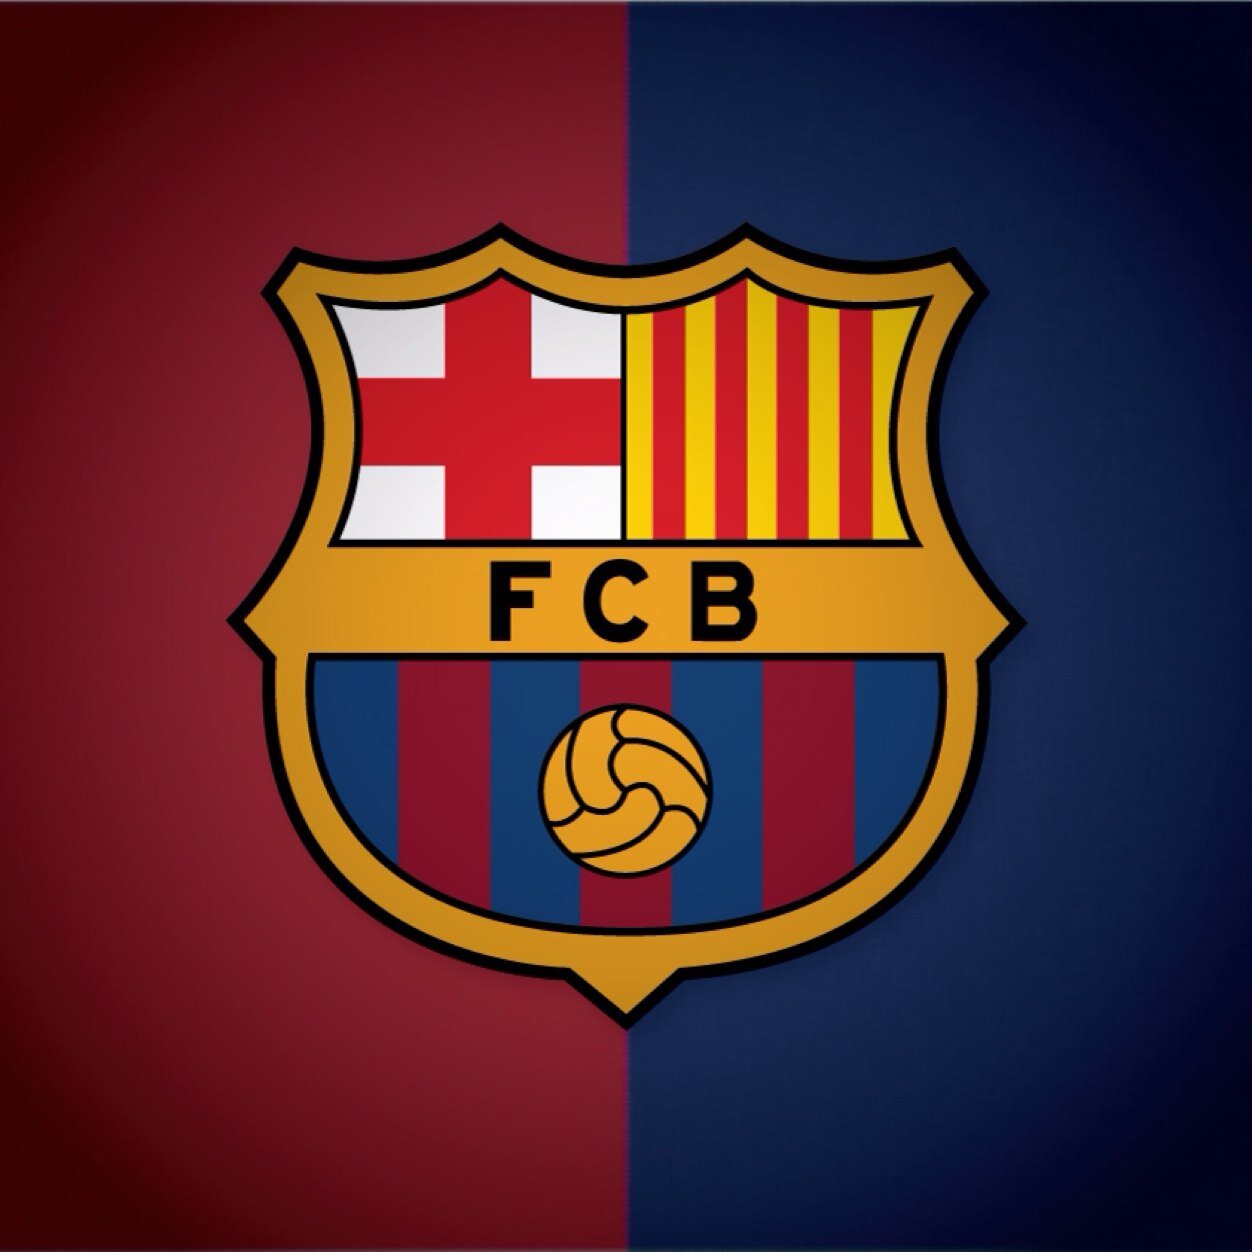 ¡Síguenos! Noticias,rumores, humor, TODO sobre el FC Barcelona.Si eres un culé de verdad no puedes faltar a esta cuenta.¡Força Barça!